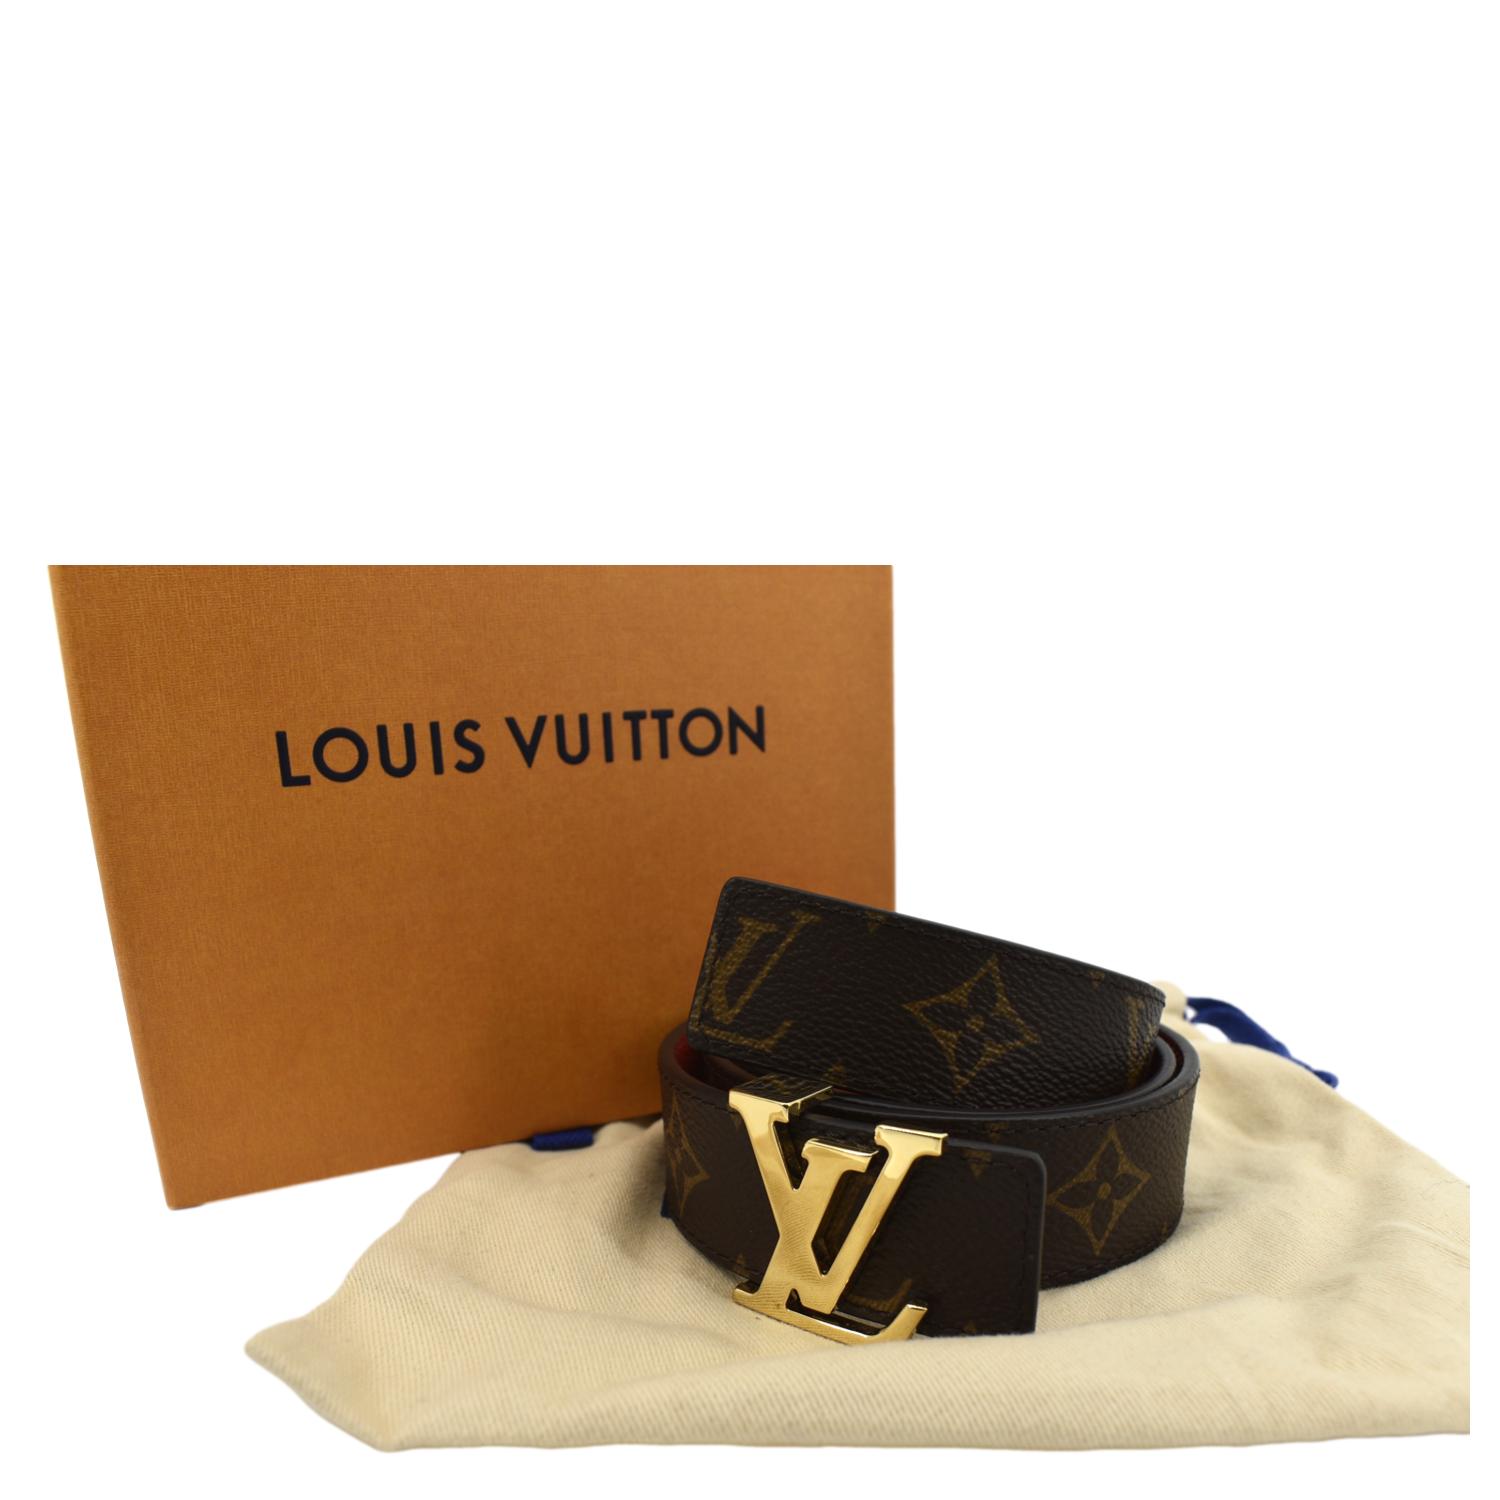 Louis Vuitton, Accessories, Louis Vuitton Lv Belt Cash App Only Pls